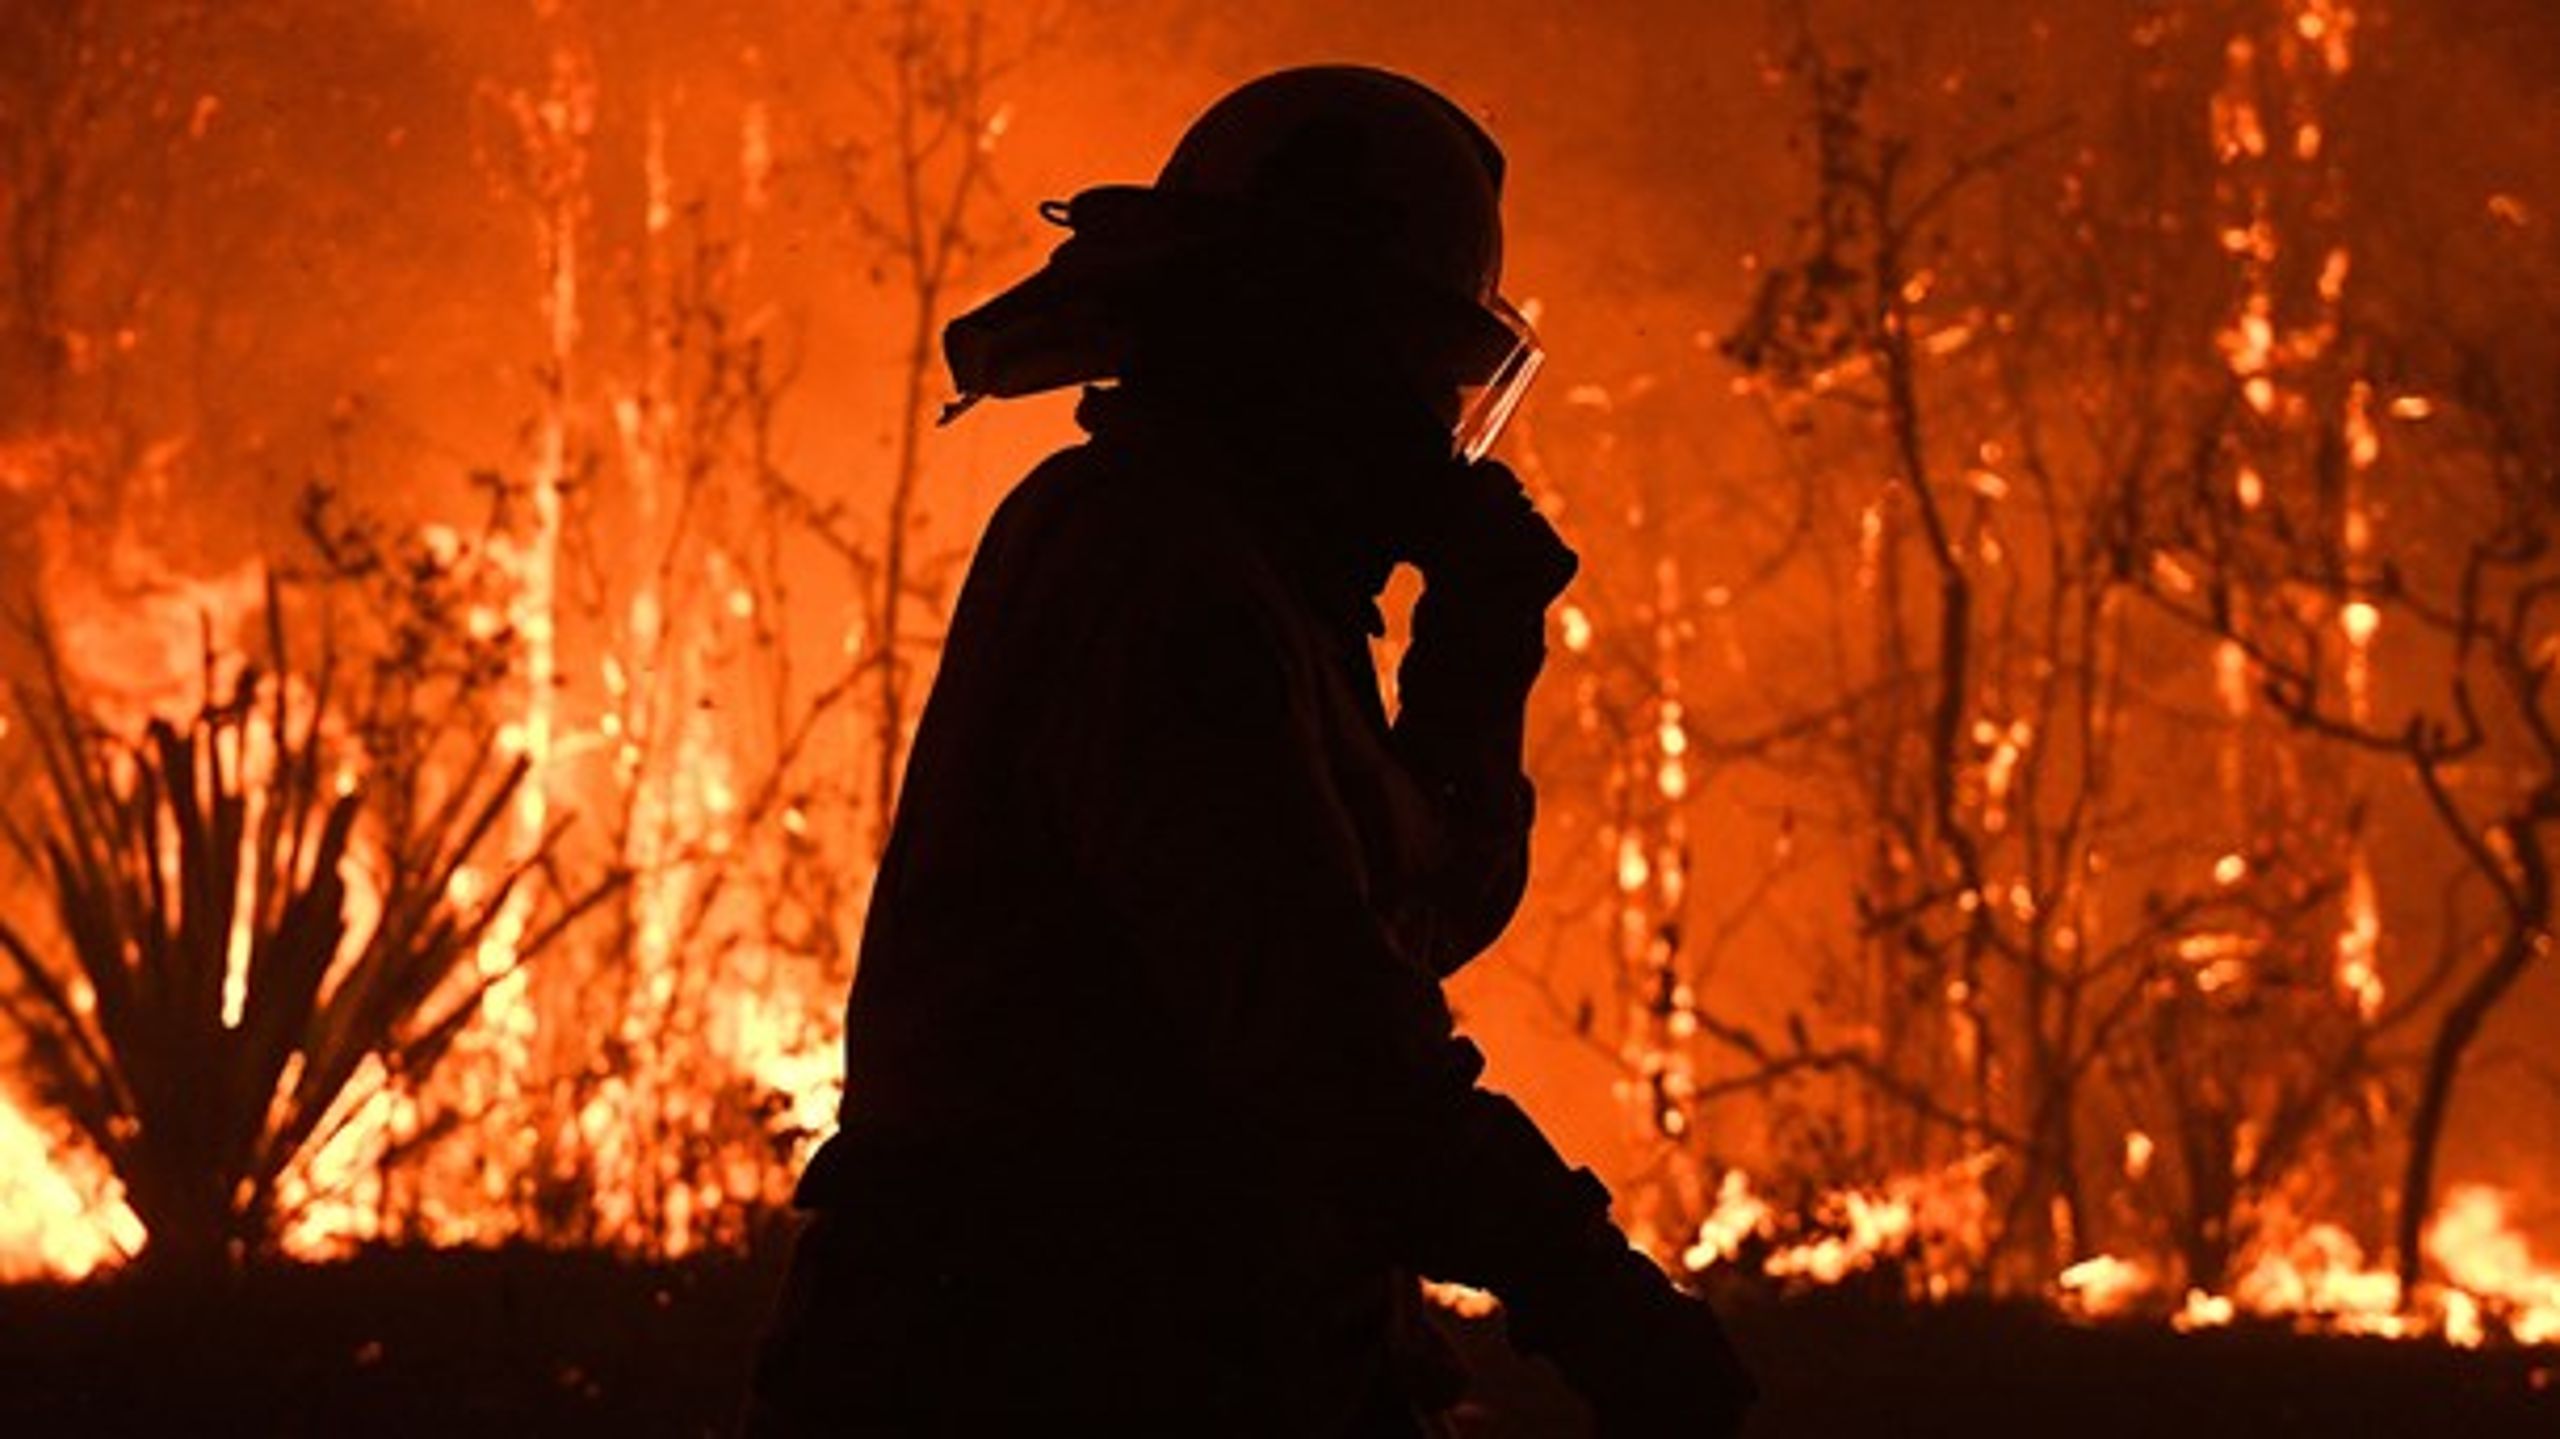 Naturbrandene i Australien har igen fået klimaforandringerne øverst på dagsordenen. Men tager klimaet for meget opmærksomhed fra andre udfordringer såsom fattigdomsbekæmpelse? Altinget tager debatten.